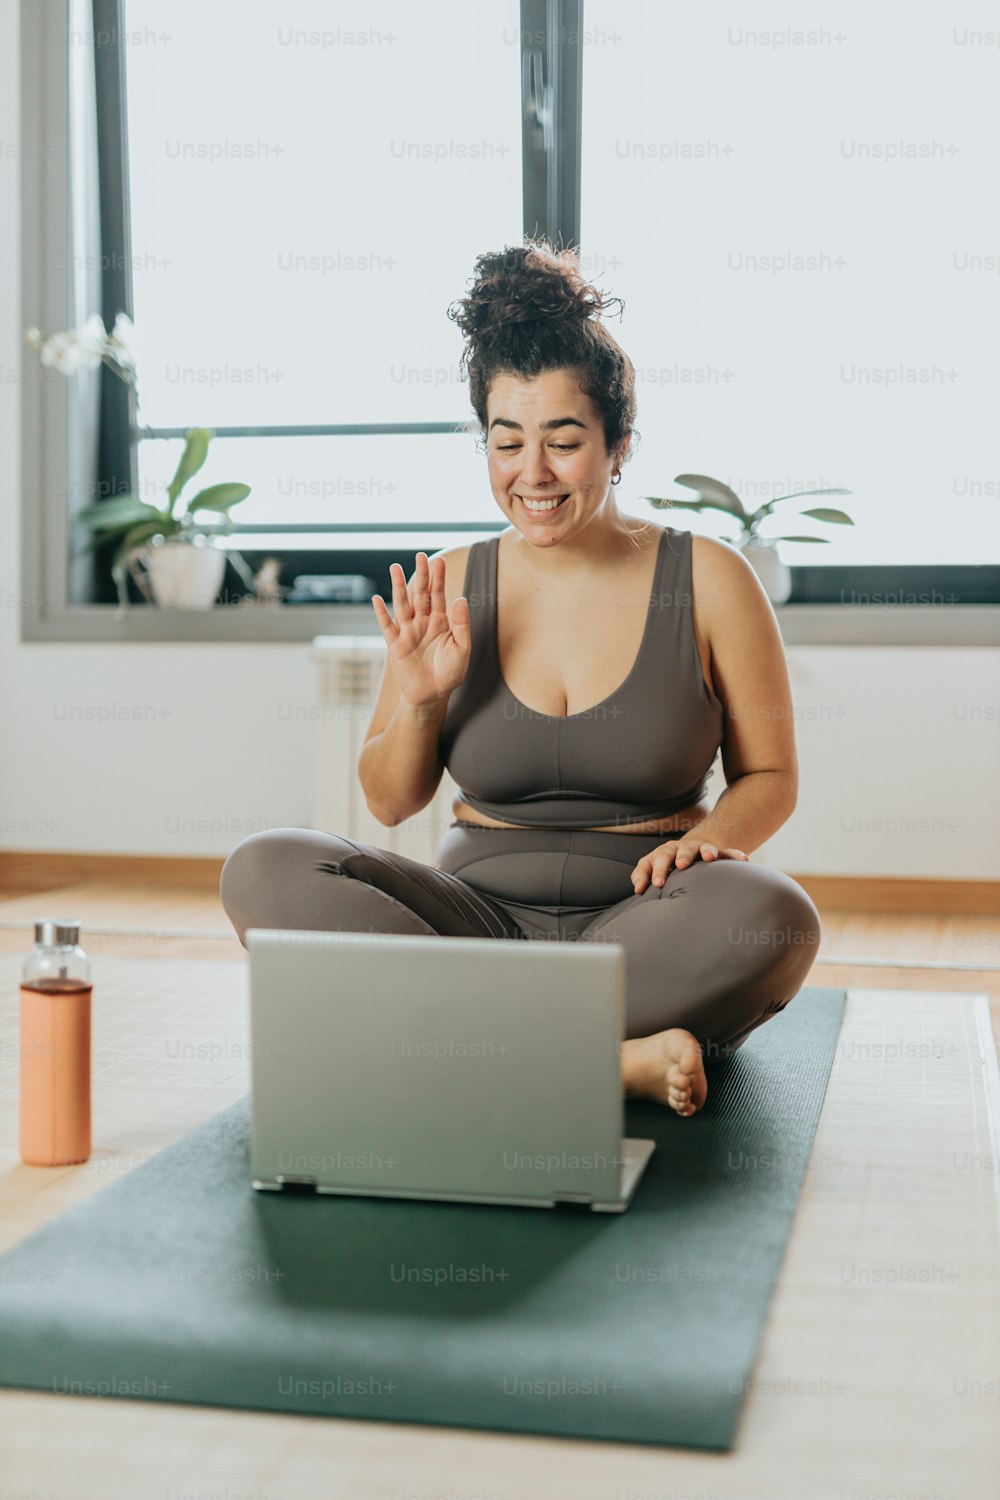 Una mujer sentada en una esterilla de yoga frente a una computadora portátil